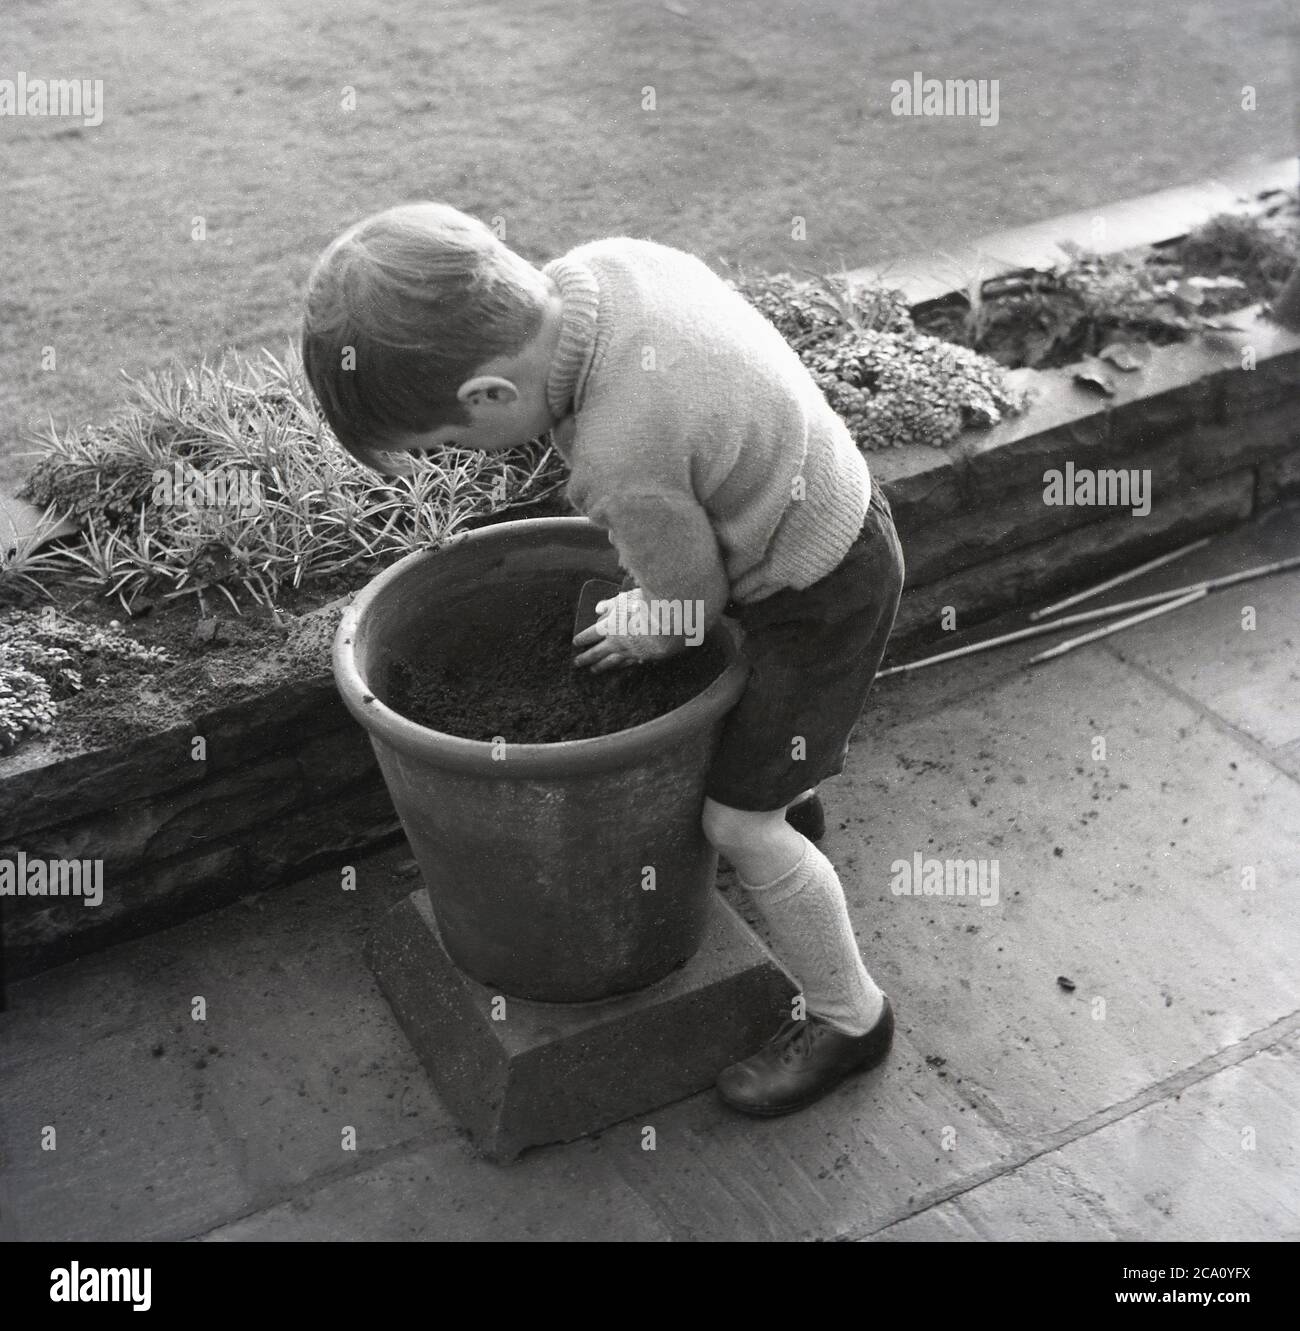 Années 1960, historique, commencer à jardiner jeune,... un petit garçon dans son uniforme d'école primaire à l'extérieur sur un patio remplissant une grande terre cuite ou terre cuite pot, Angleterre, Royaume-Uni. Banque D'Images